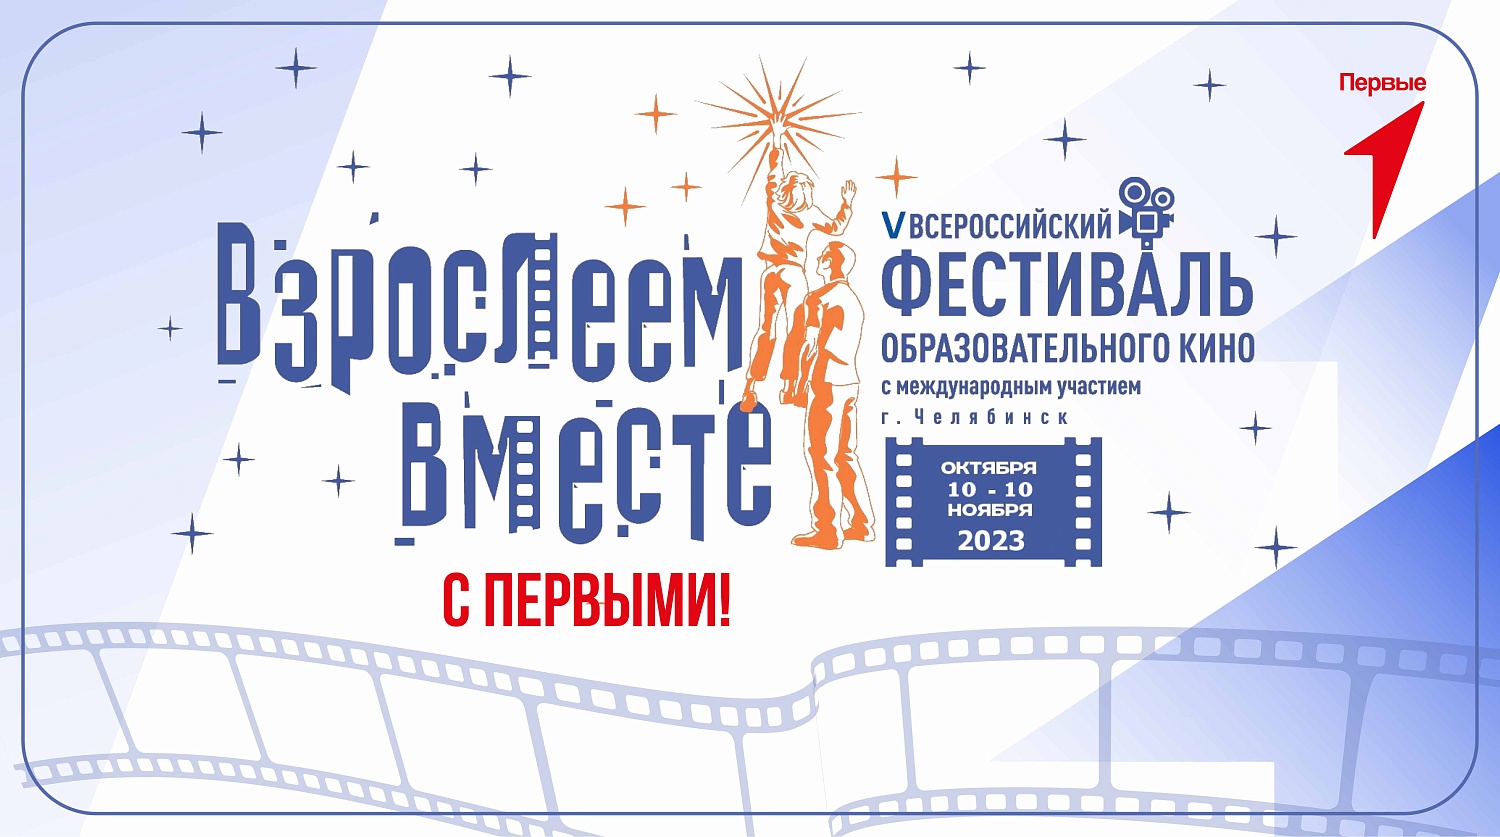 V Всероссийский с международным участием фестиваль образовательного кино «Взрослеем вместе» – социально значимый культурно-образовательный проект